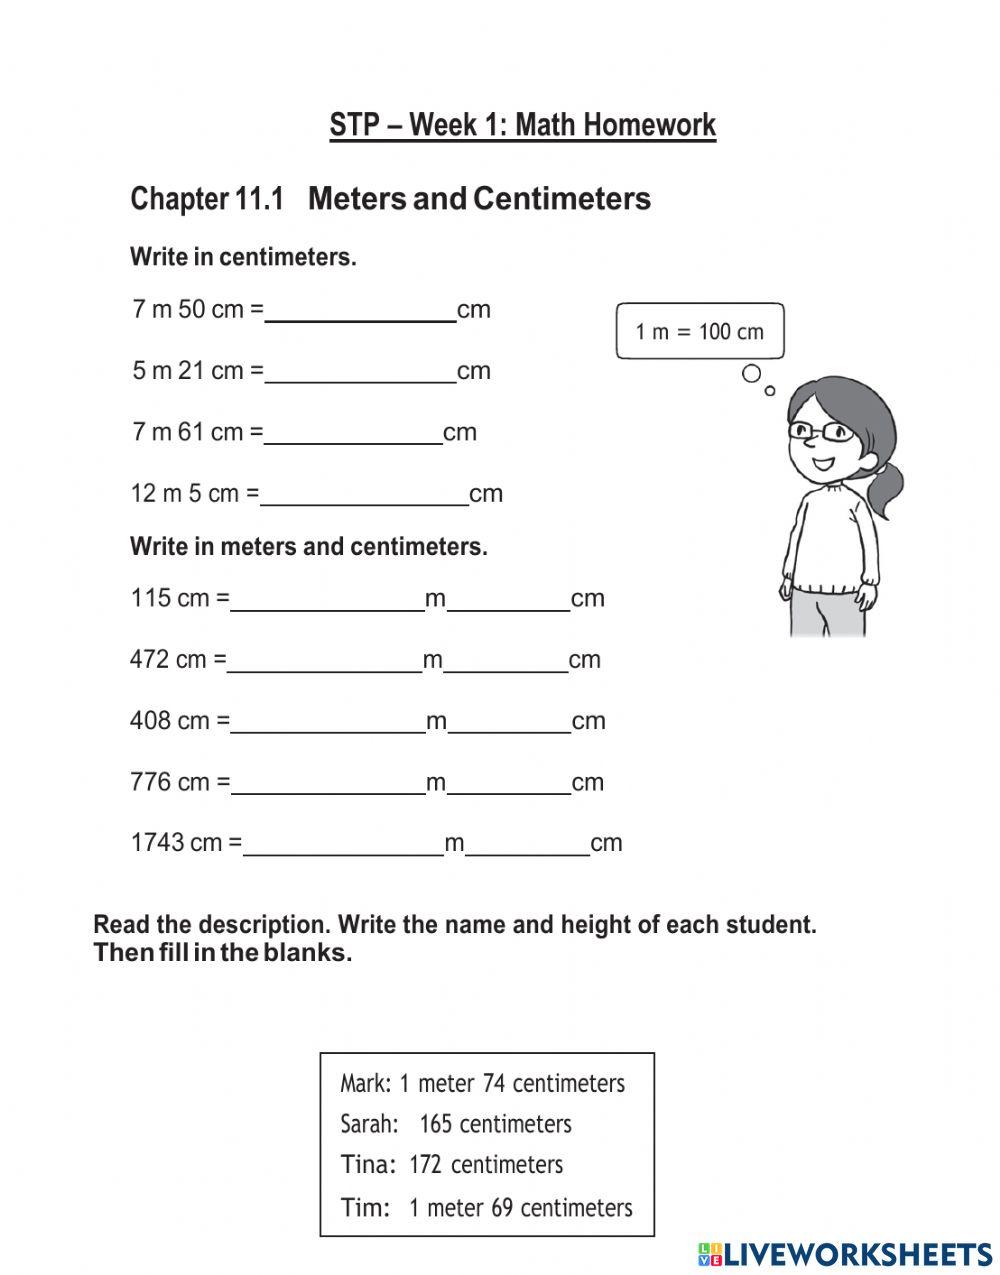 STP - Week 1 - Math Homework